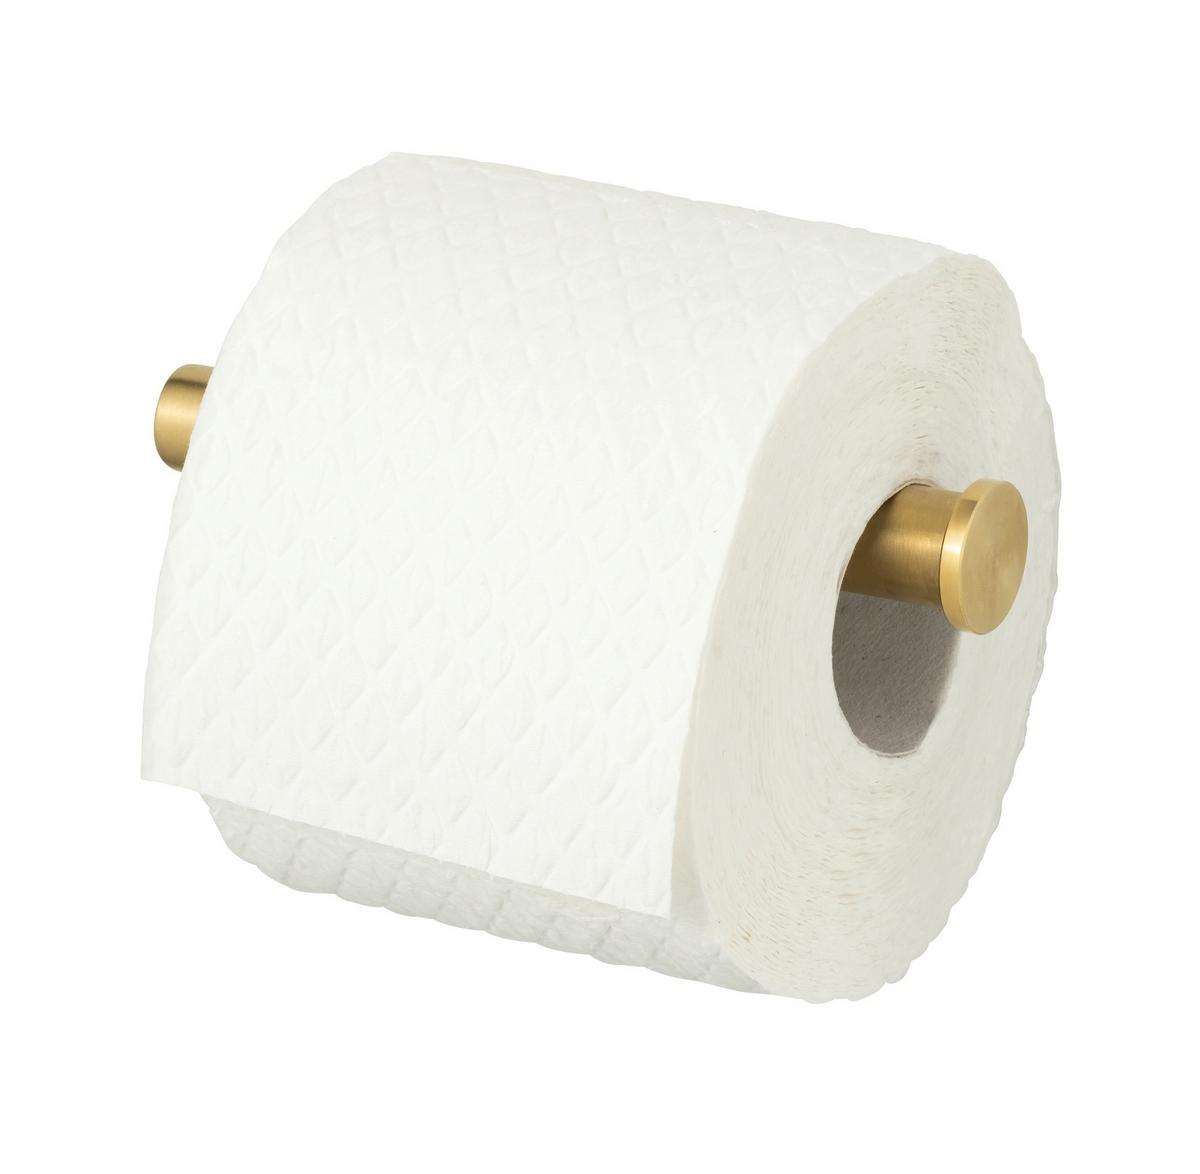 Toilettenpapierhalter in Goldfarben online kaufen ➤ mömax